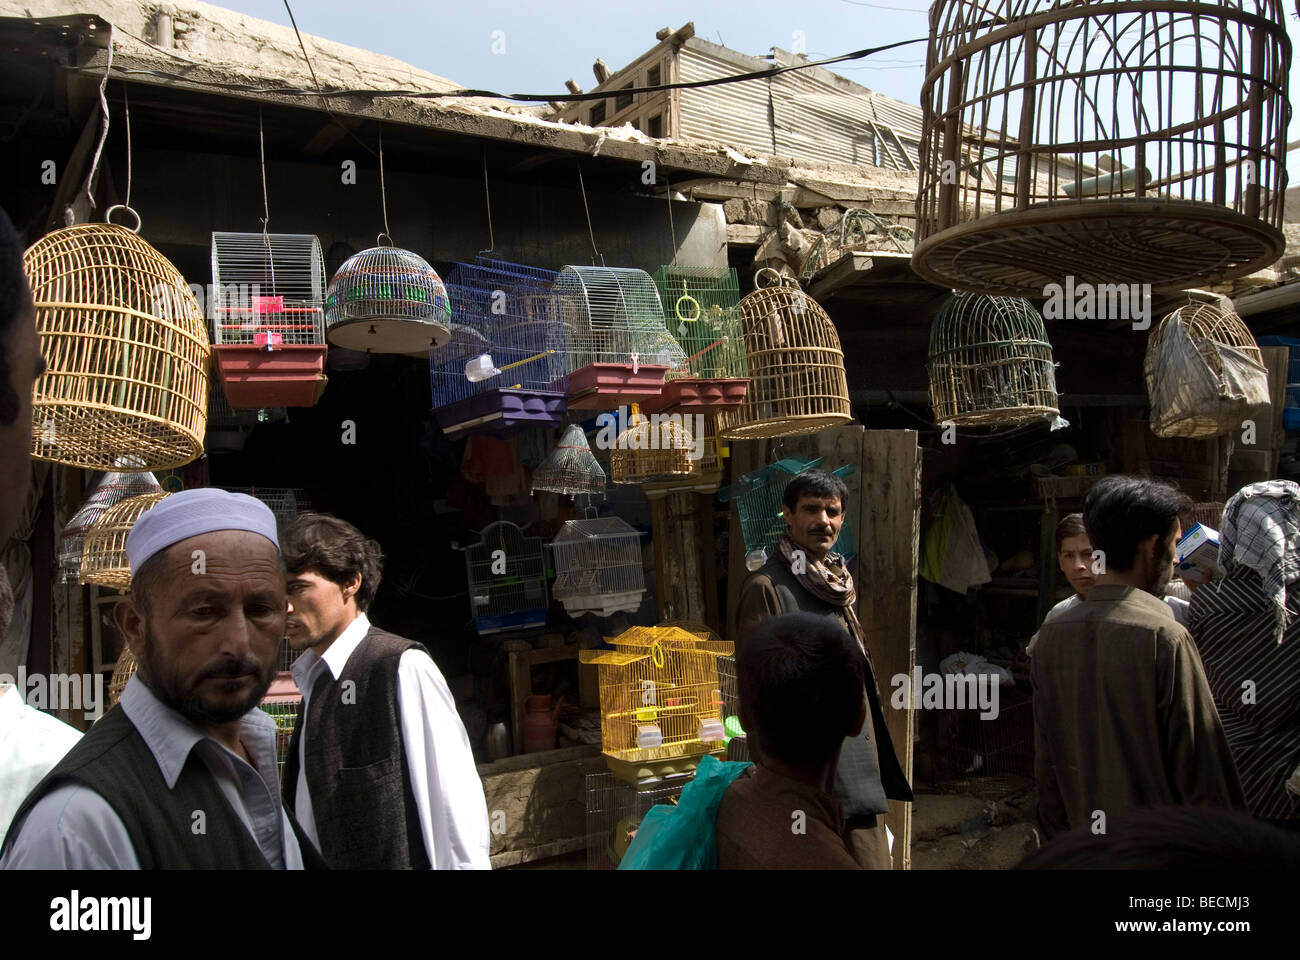 Kaboul, Afghanistan. Marché aux oiseaux. Les hommes dans la rue et les cages à oiseaux Banque D'Images